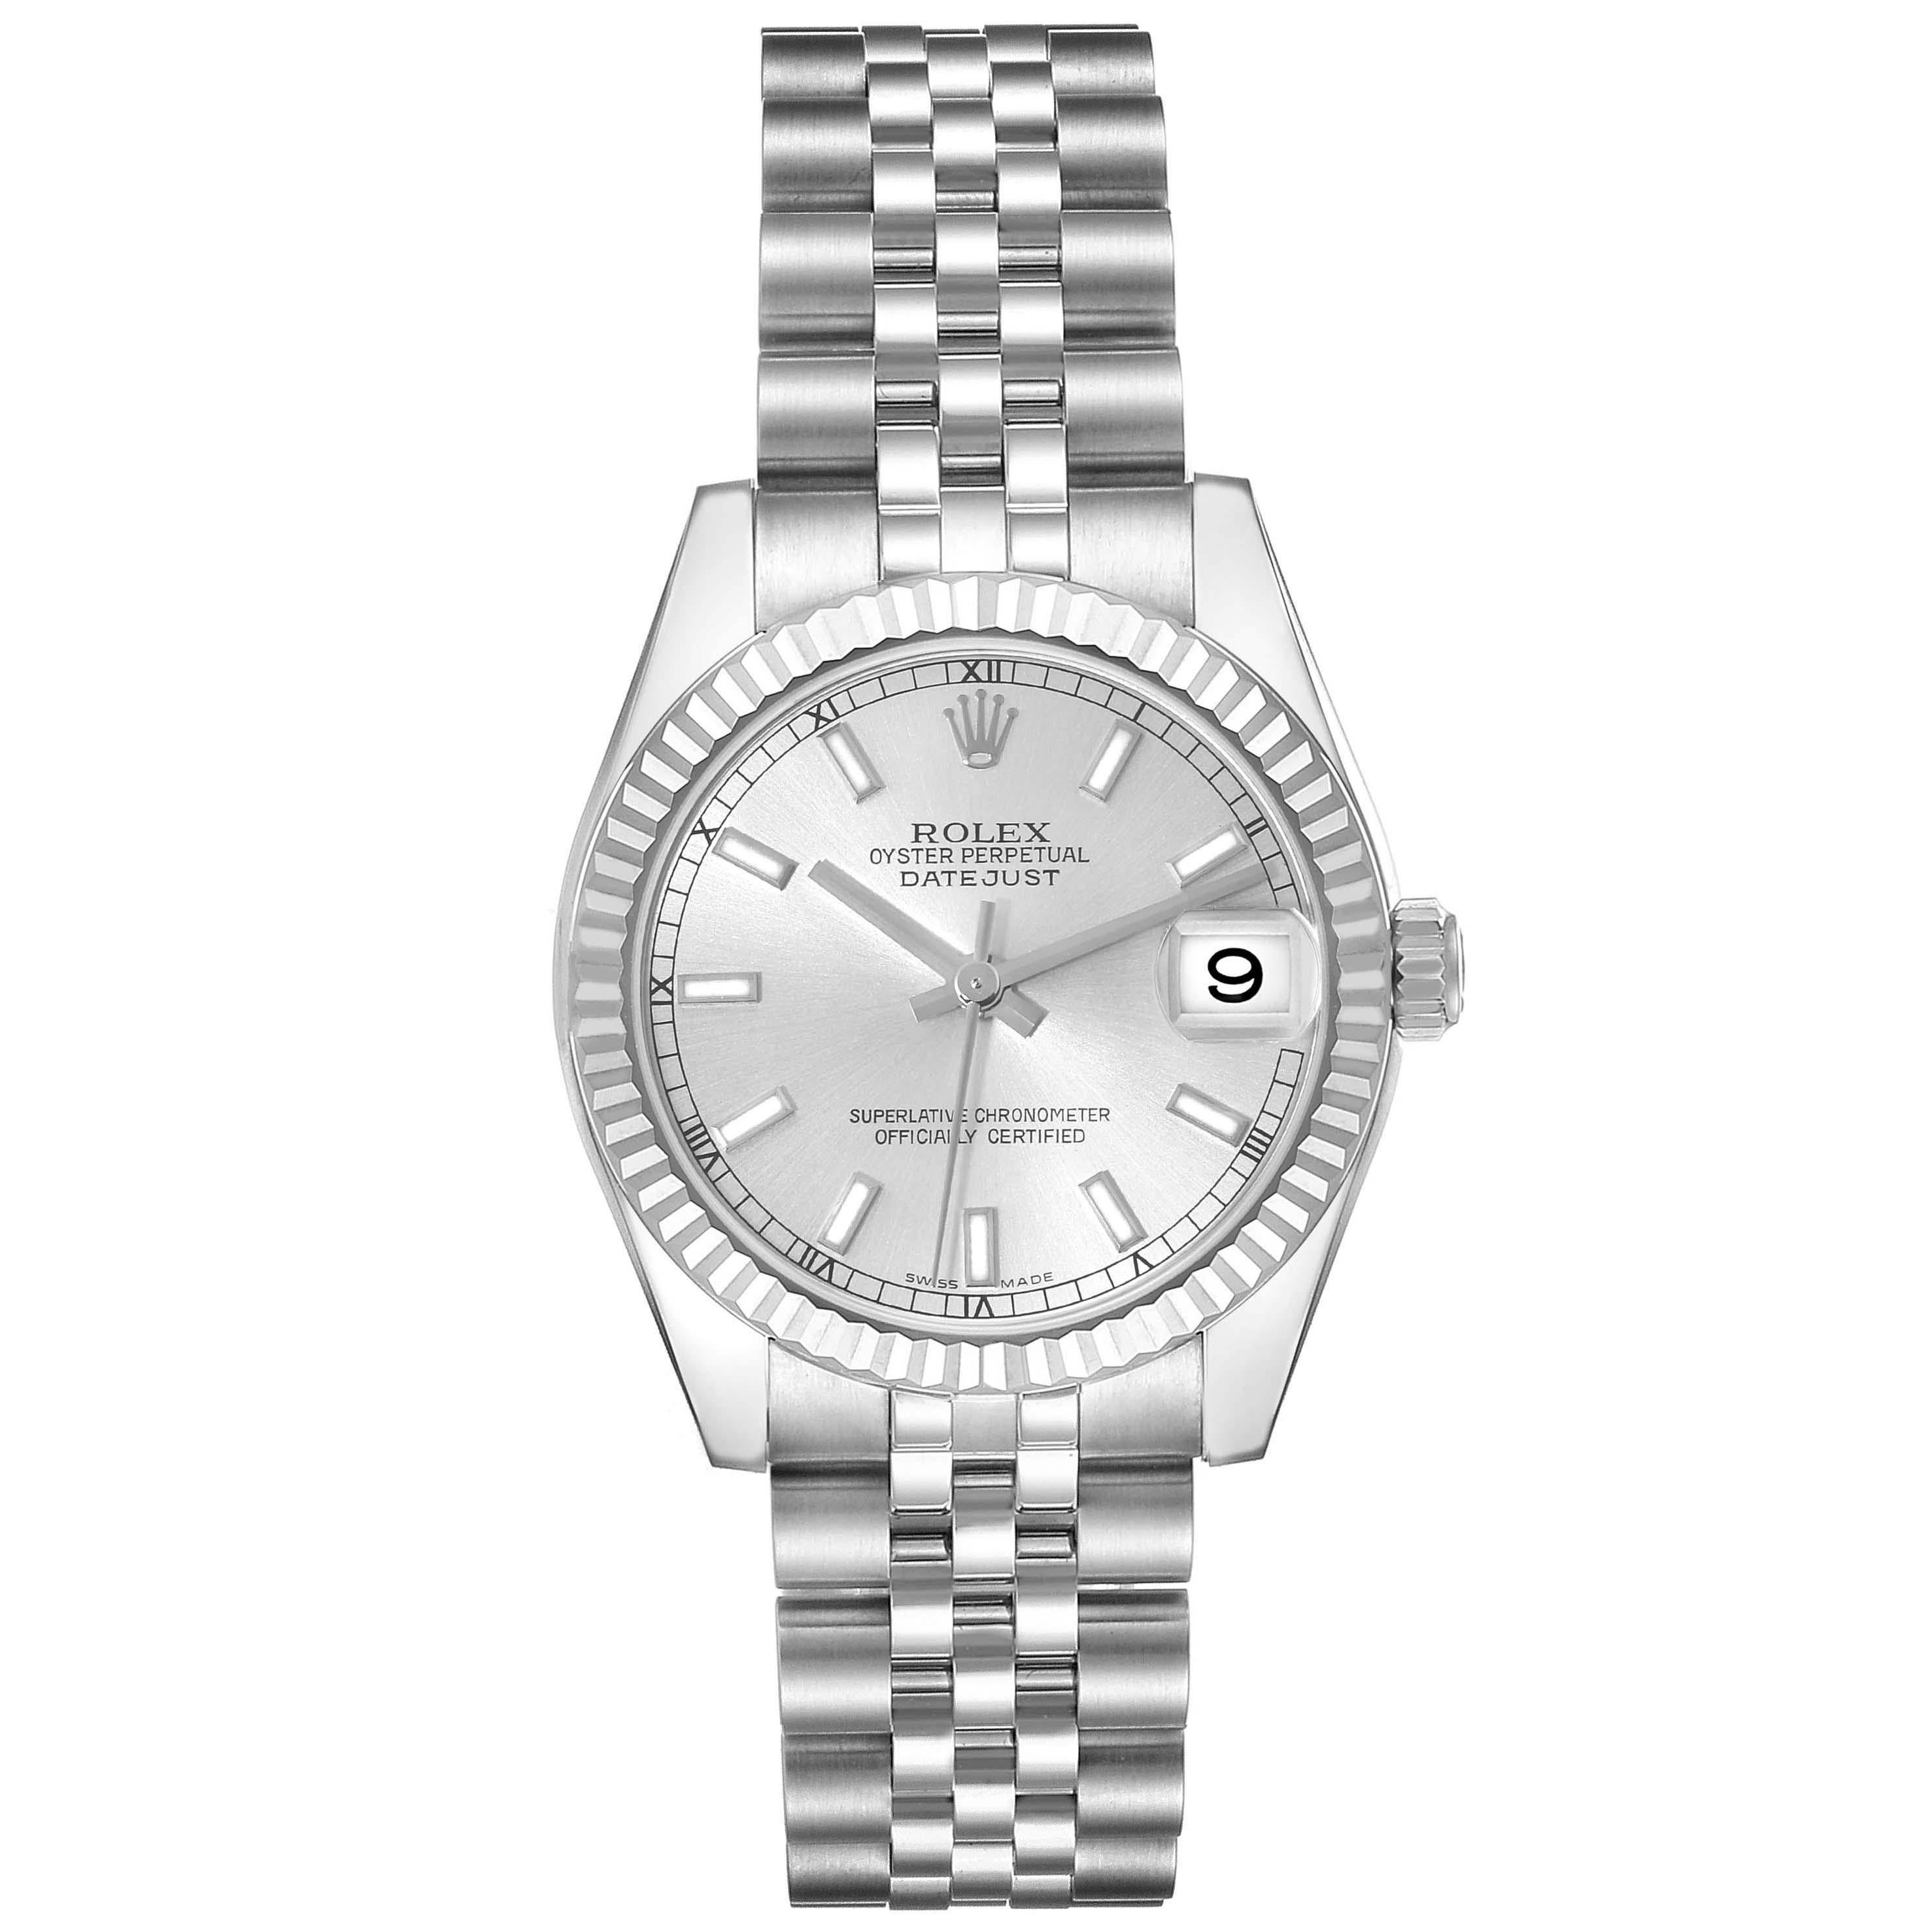 Rolex Datejust Midsize 31 Steel White Gold Silver Dial Ladies Watch 178274. Mouvement automatique à remontage automatique, officiellement certifié chronomètre. Boîtier oyster en acier inoxydable de 31.0 mm de diamètre. Logo Rolex sur la couronne.